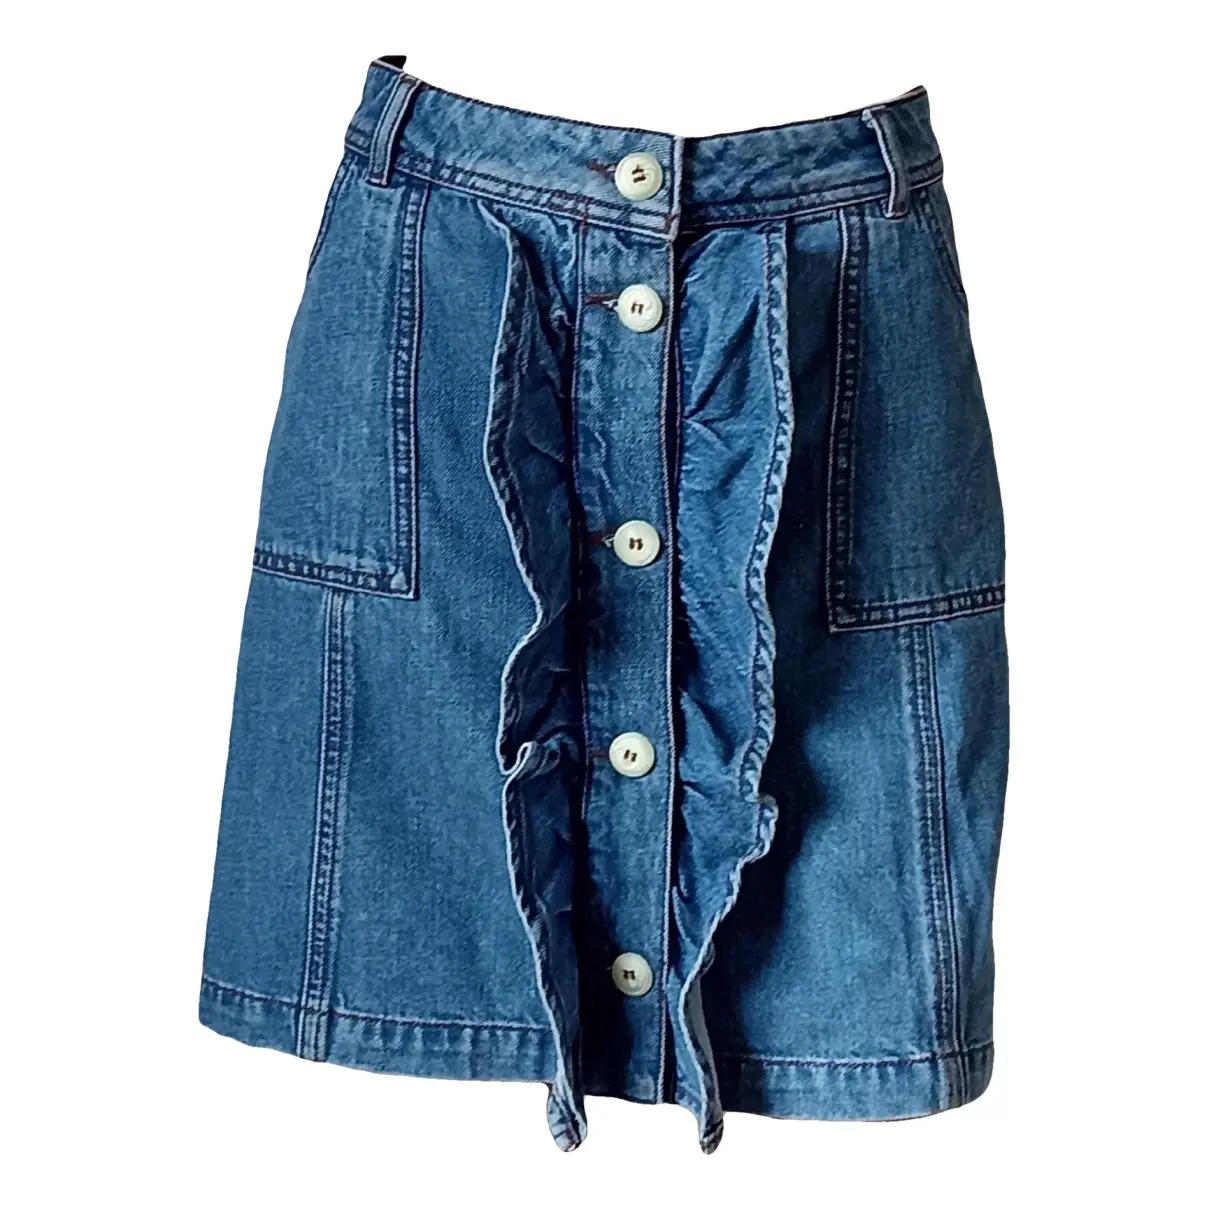 Spring Summer 2020 mini skirt